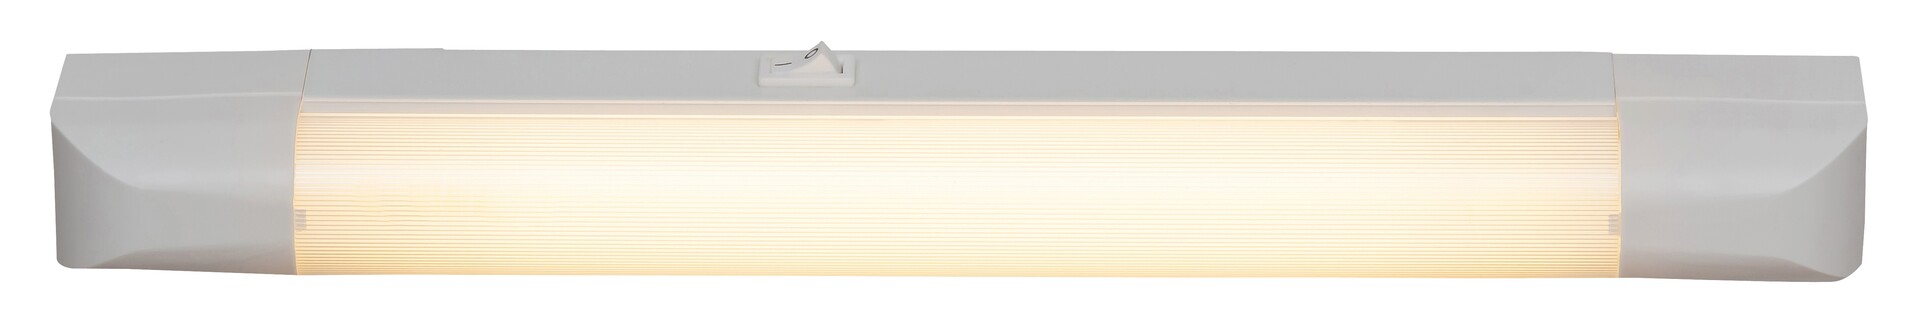 Arbeitsleuchte Band light 2301, G13, 10W, 2700K, 630lm, Metall, weiß, warmweiß, 39,5cm